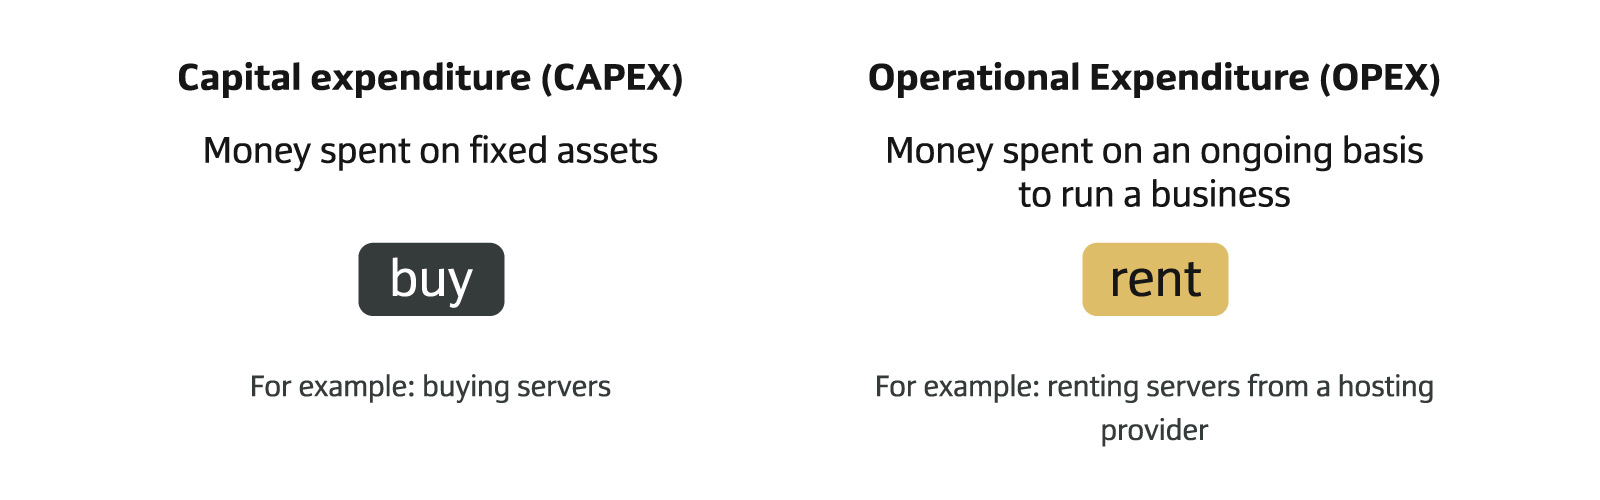 capex vs opex